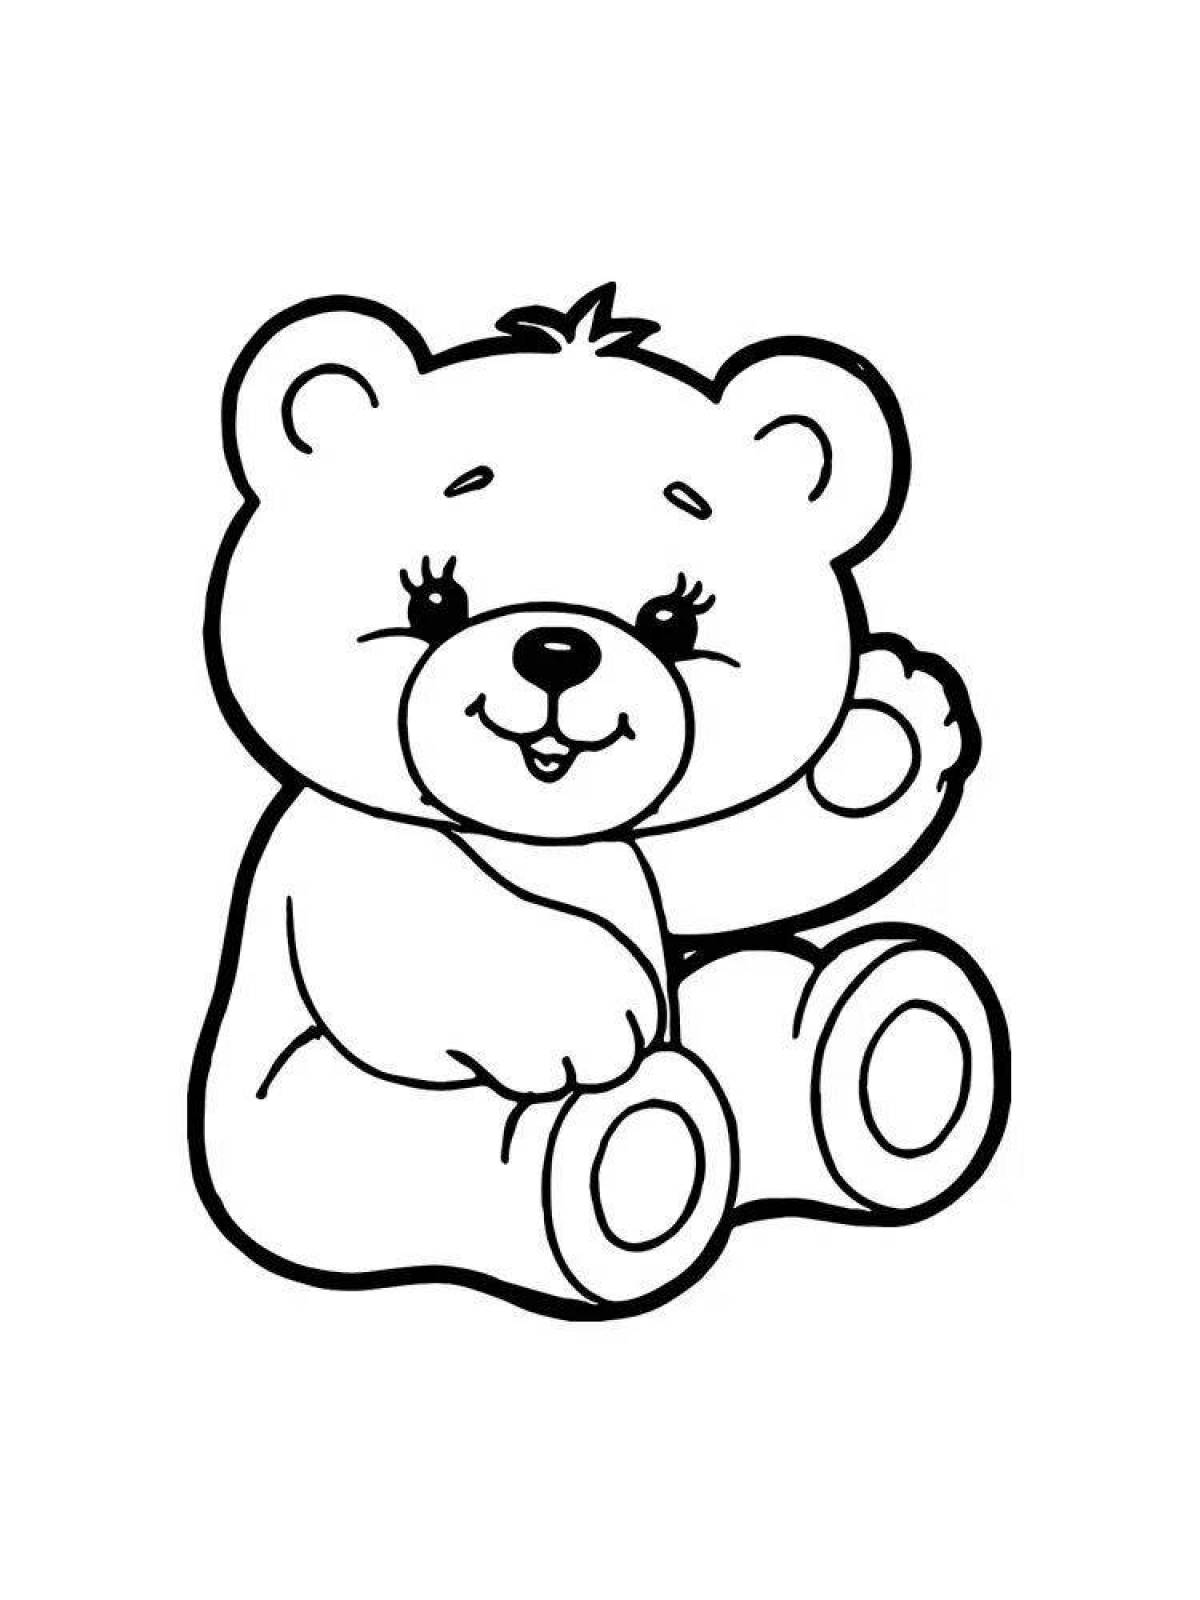 Royal bear coloring page